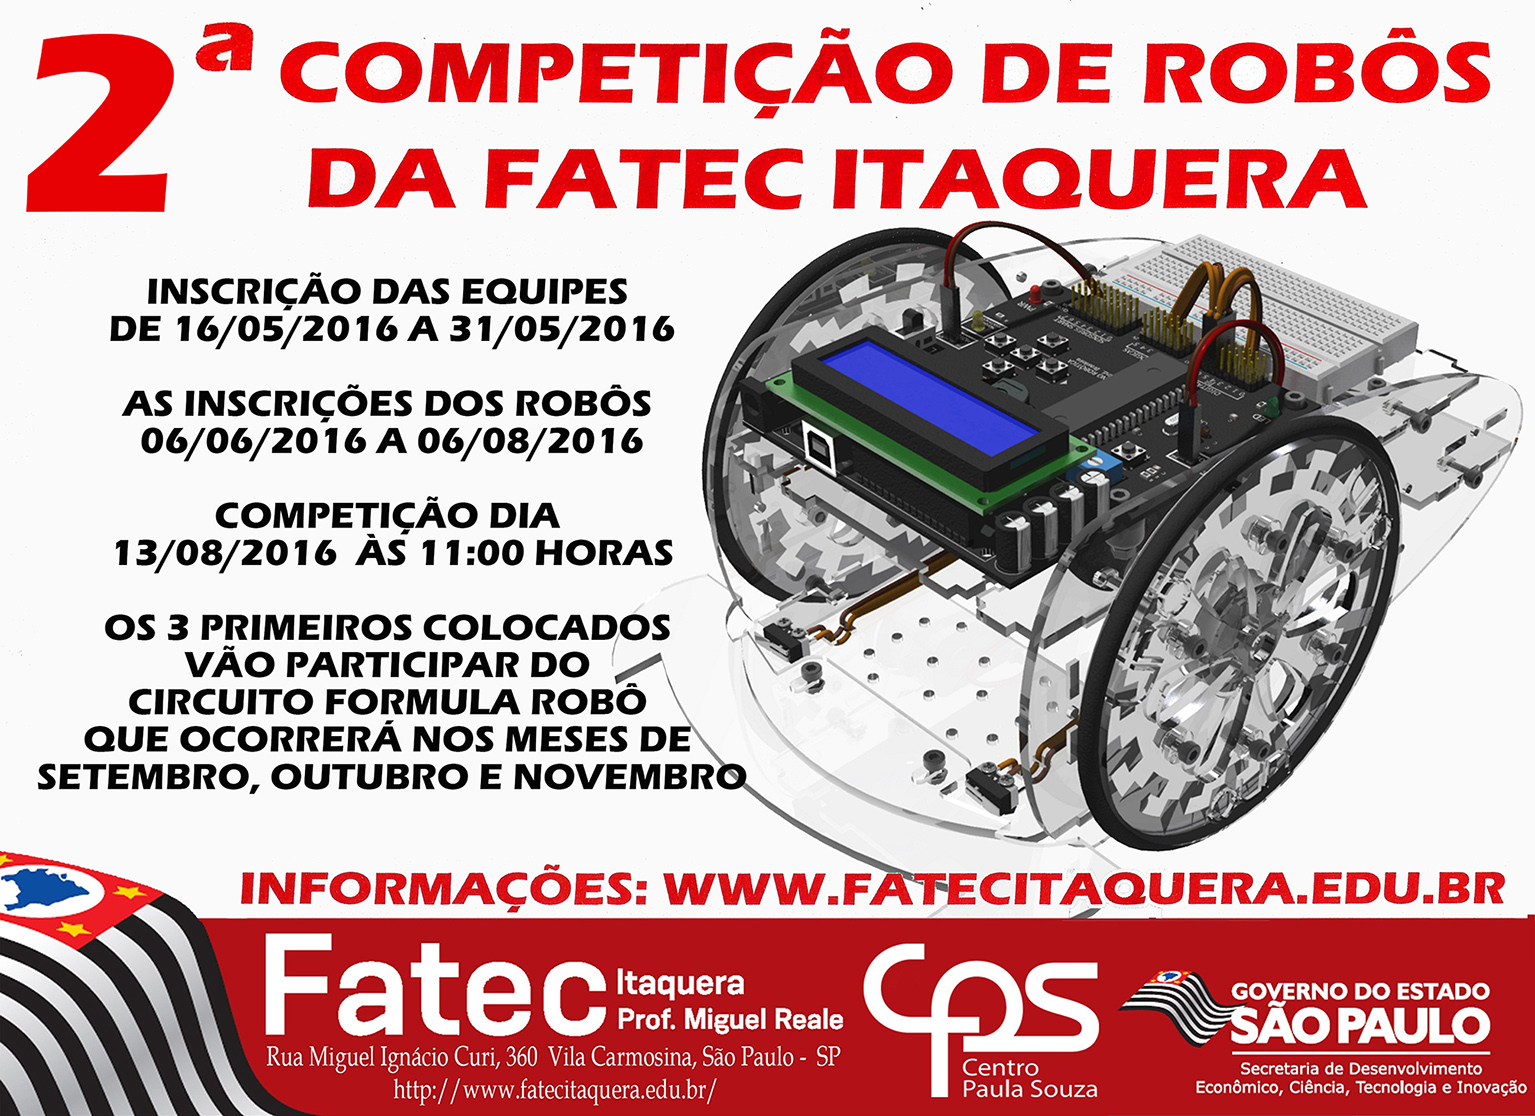 Cartaz 2a. Competição de Robôs - Fatec Itaqueramenorr